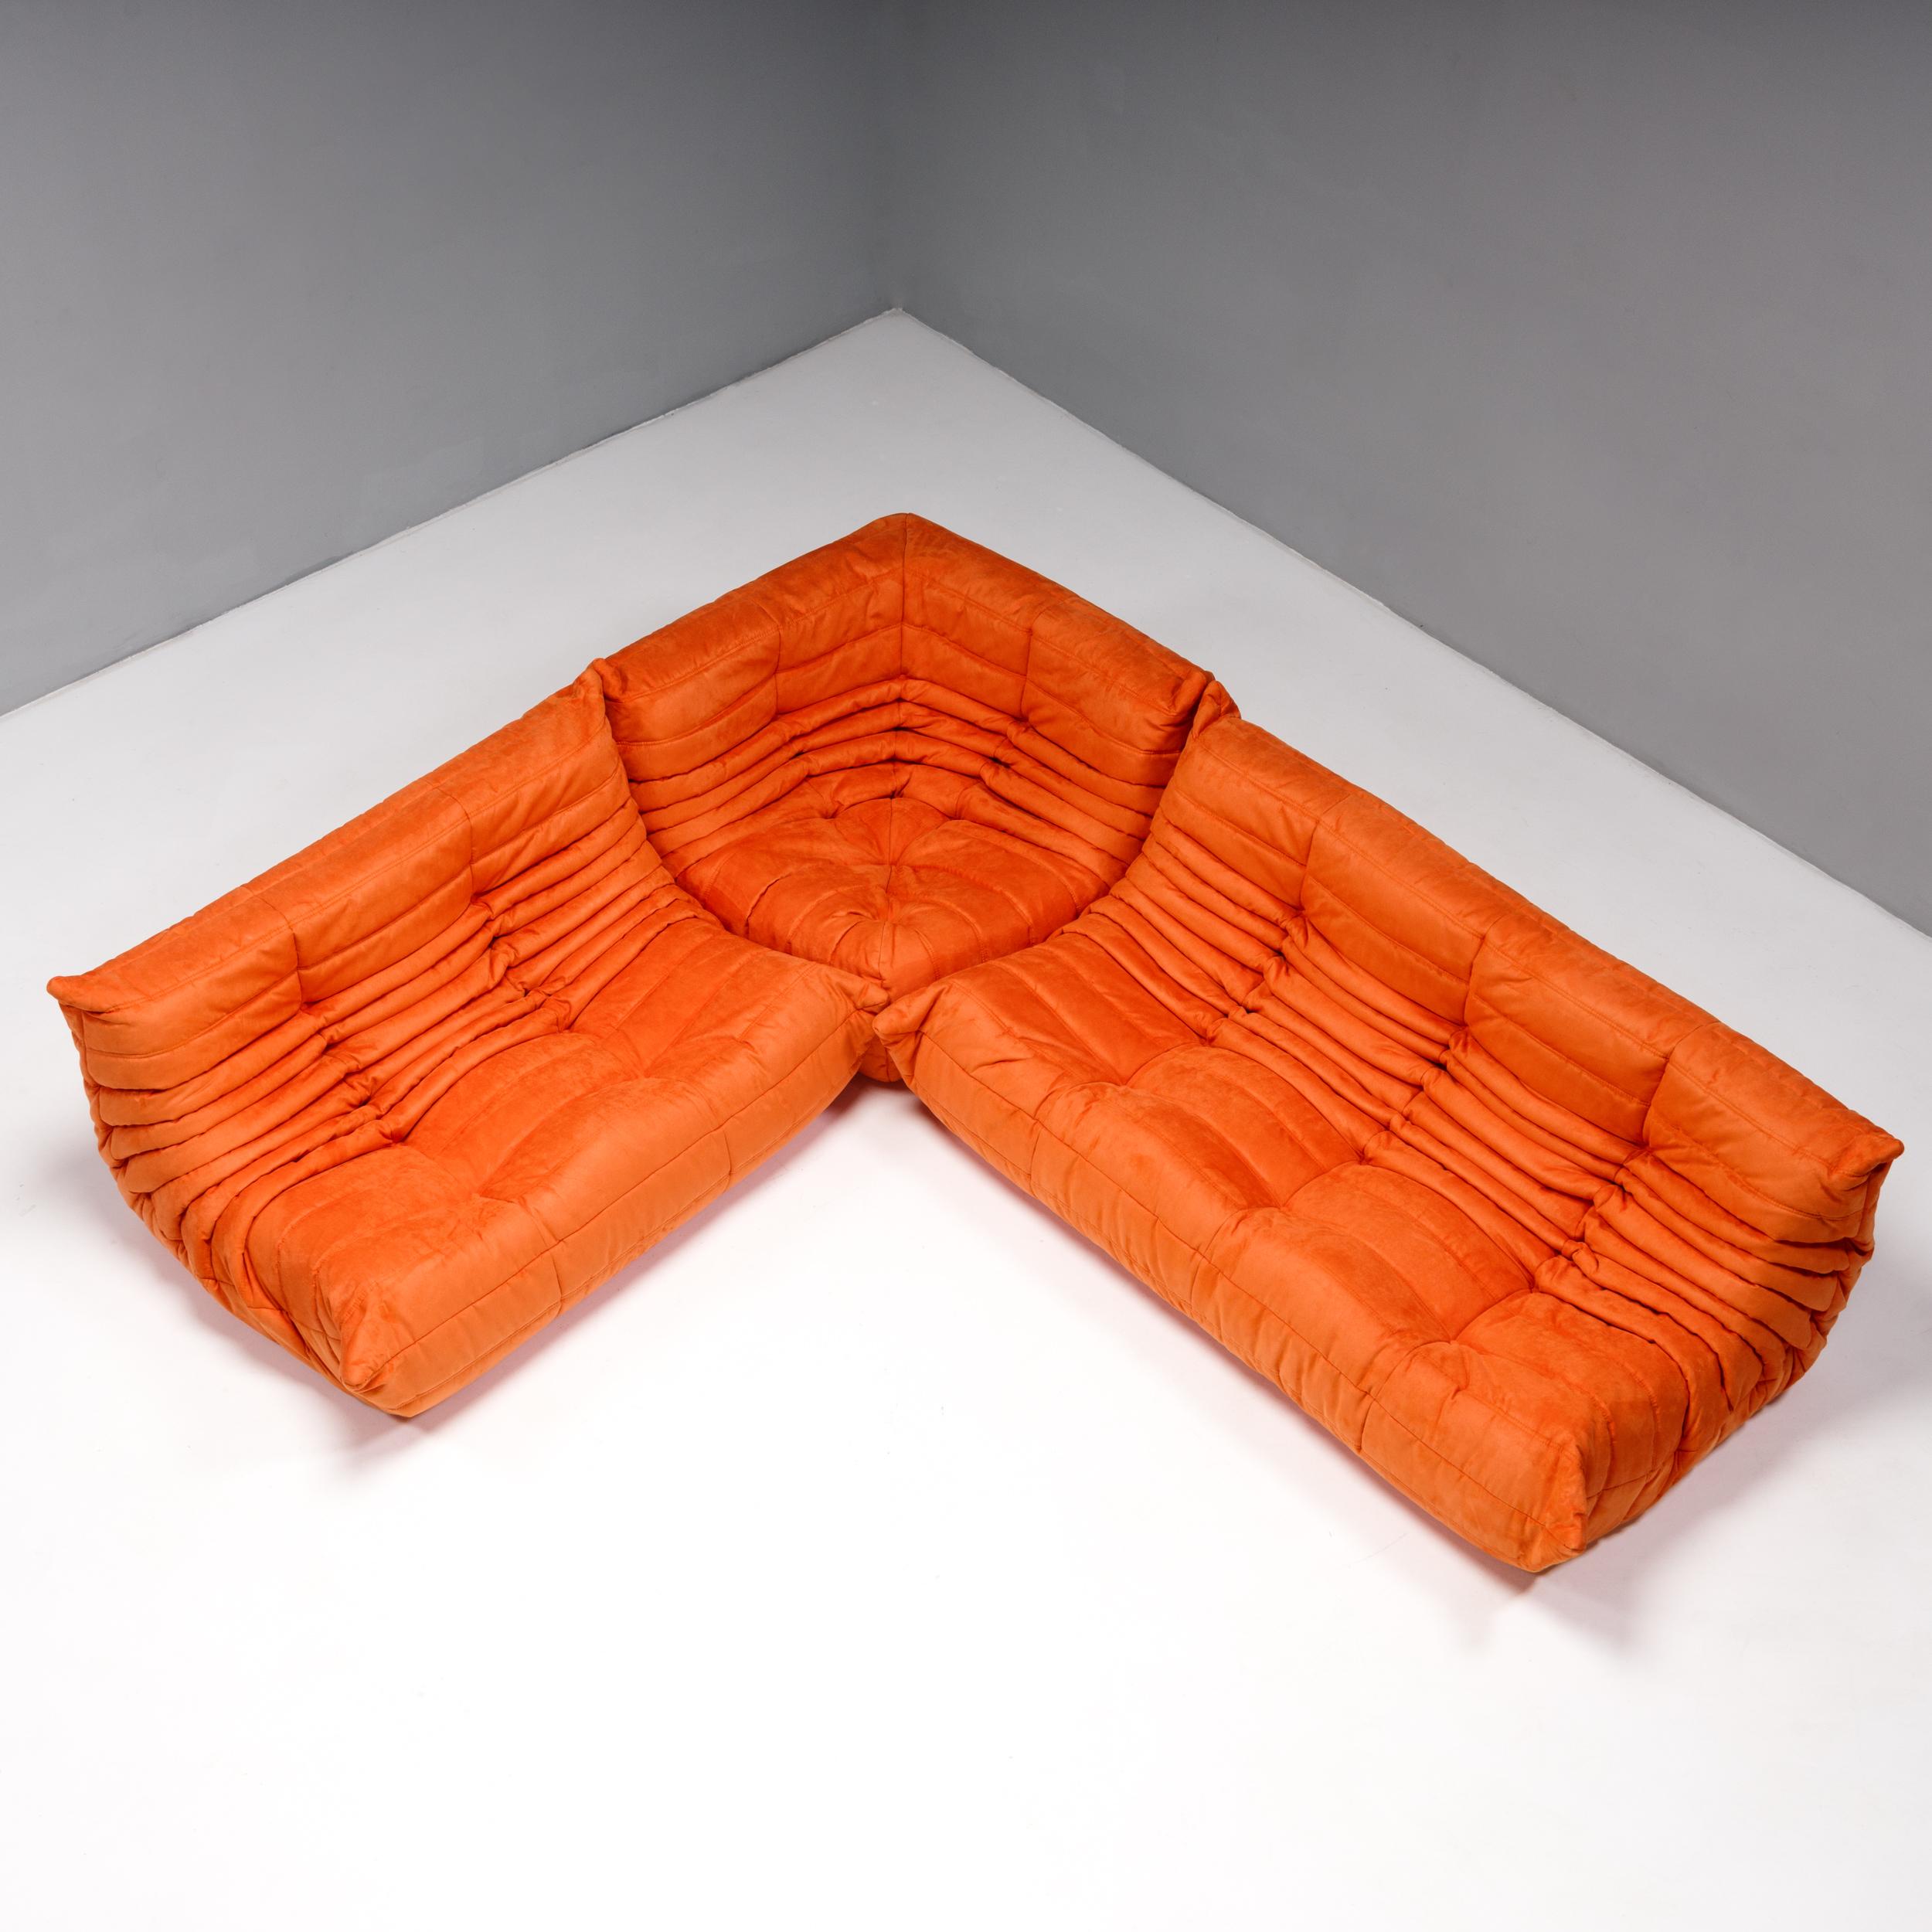 L'ensemble canapé Togo orange, conçu à l'origine par Michel Ducaroy pour Ligne Roset en 1973, est devenu un classique du design du milieu du siècle.

Les canapés ont été nouvellement rembourrés dans un tissu doux de couleur orange vif. Fabriquée